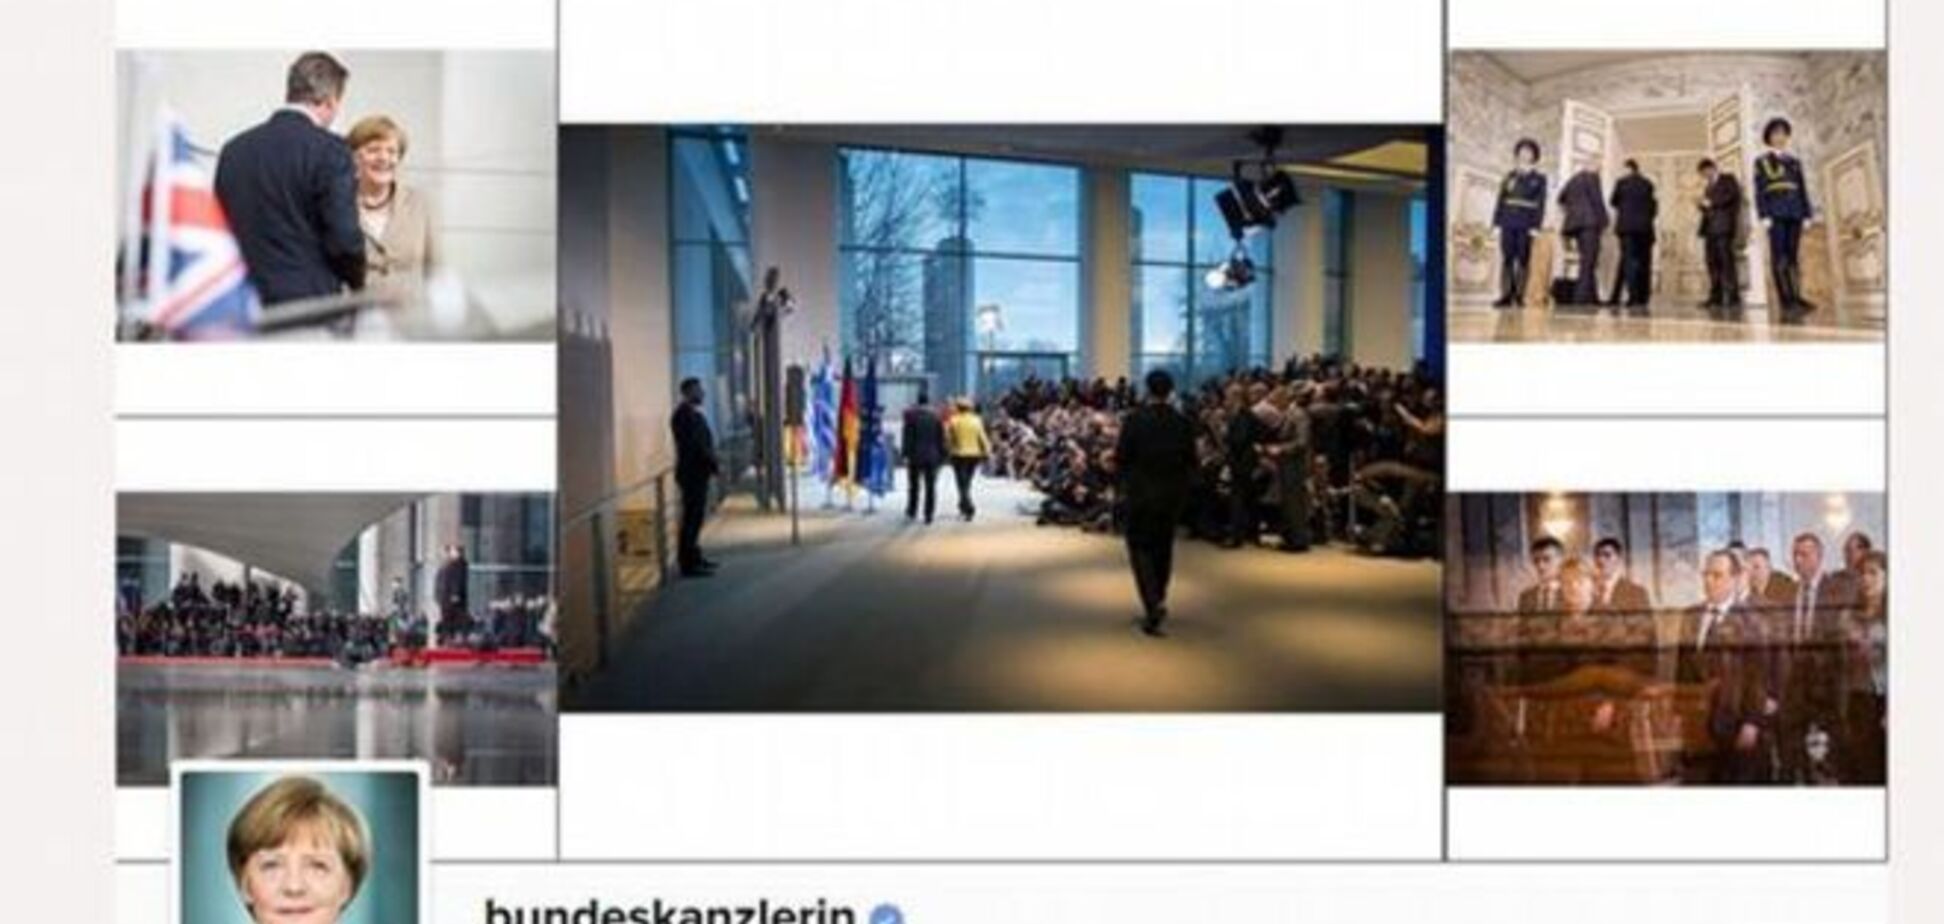 Достали! Instagram Меркель почистили от троллей Кремля